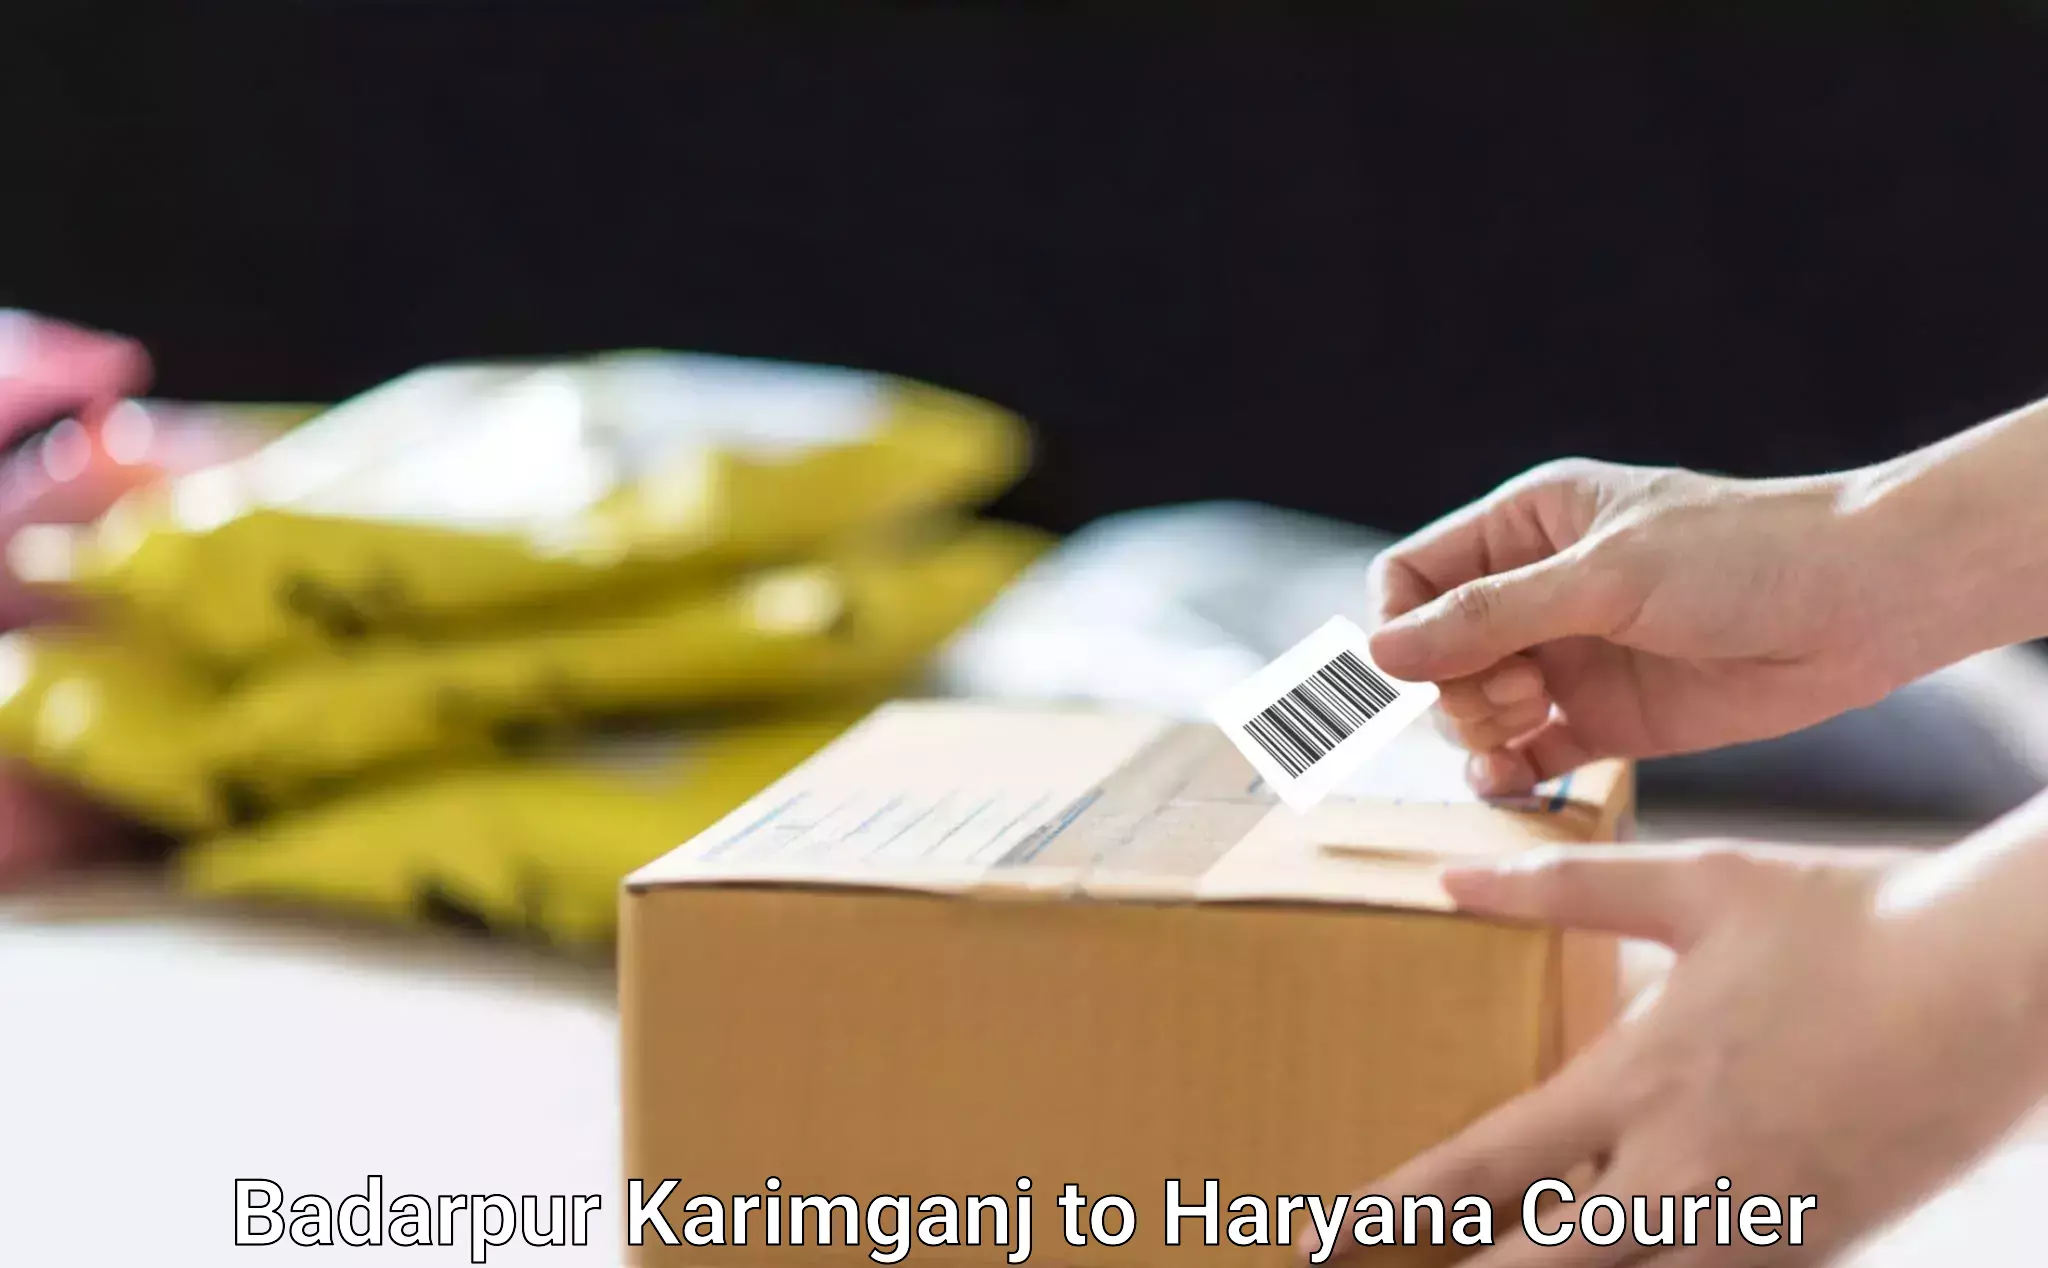 High-efficiency logistics Badarpur Karimganj to Haryana